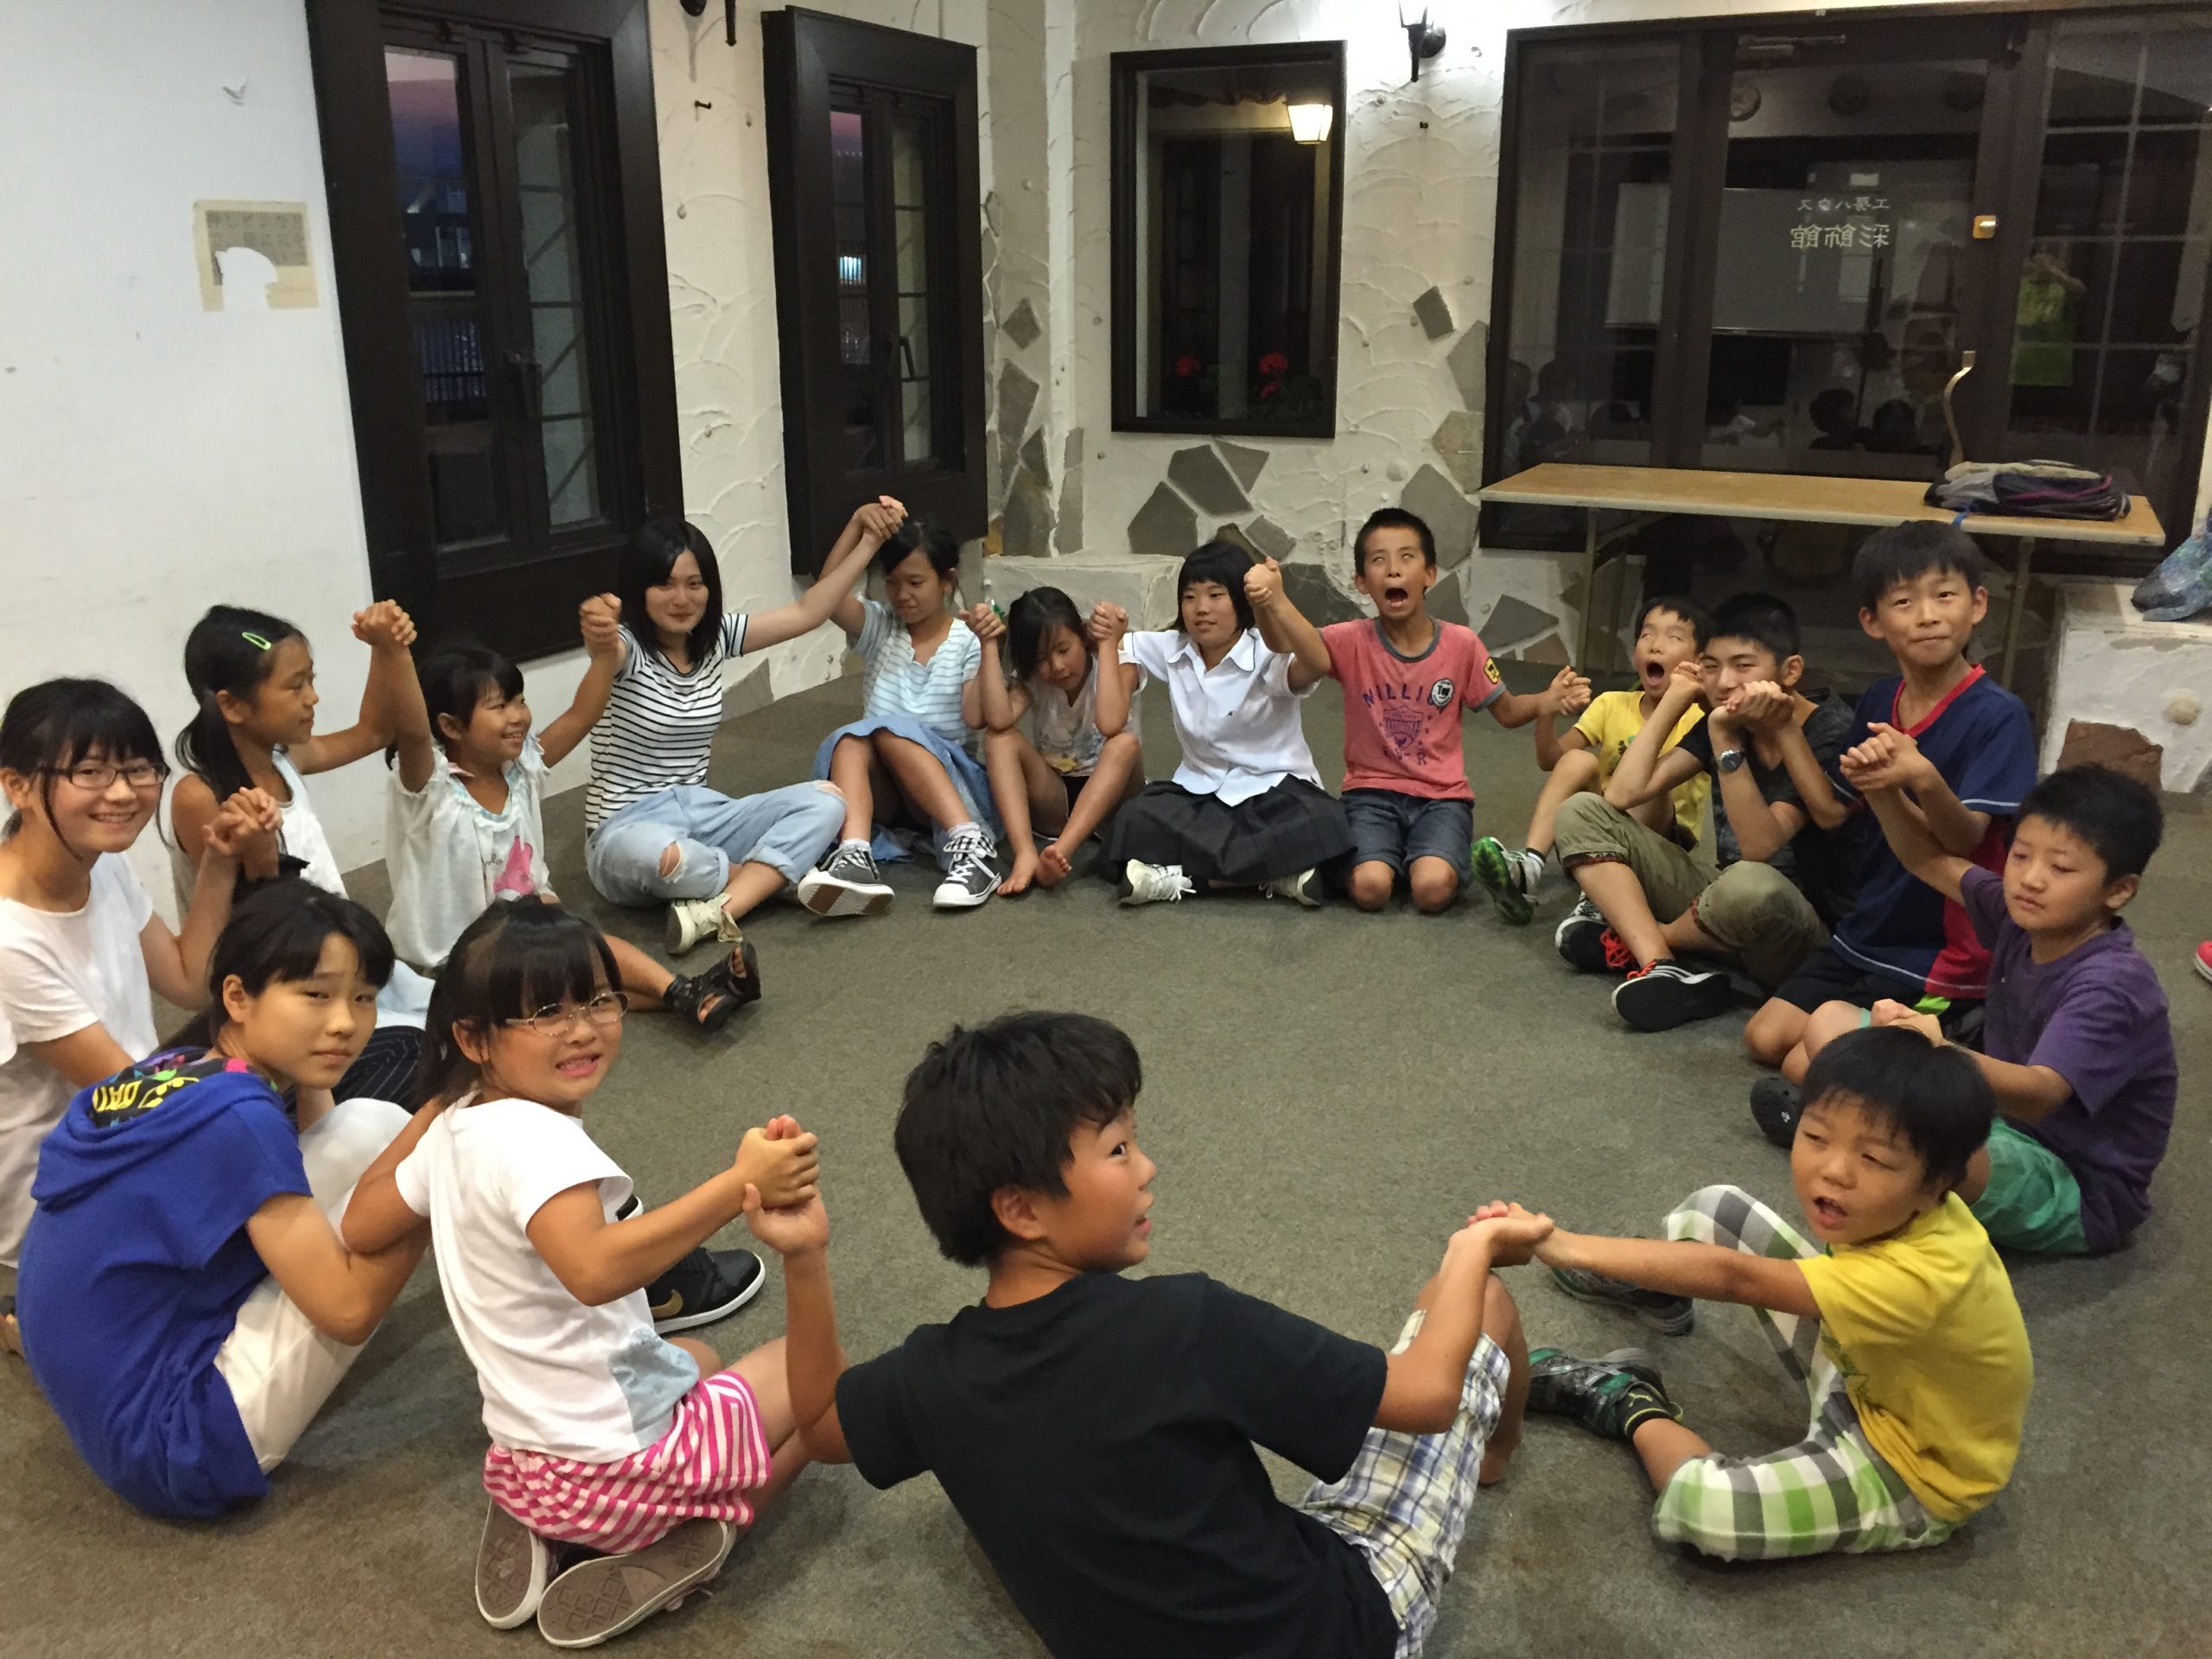 ラボ・パーティ 呉市焼山中央教室(森岡パーティ)の雰囲気がわかる写真